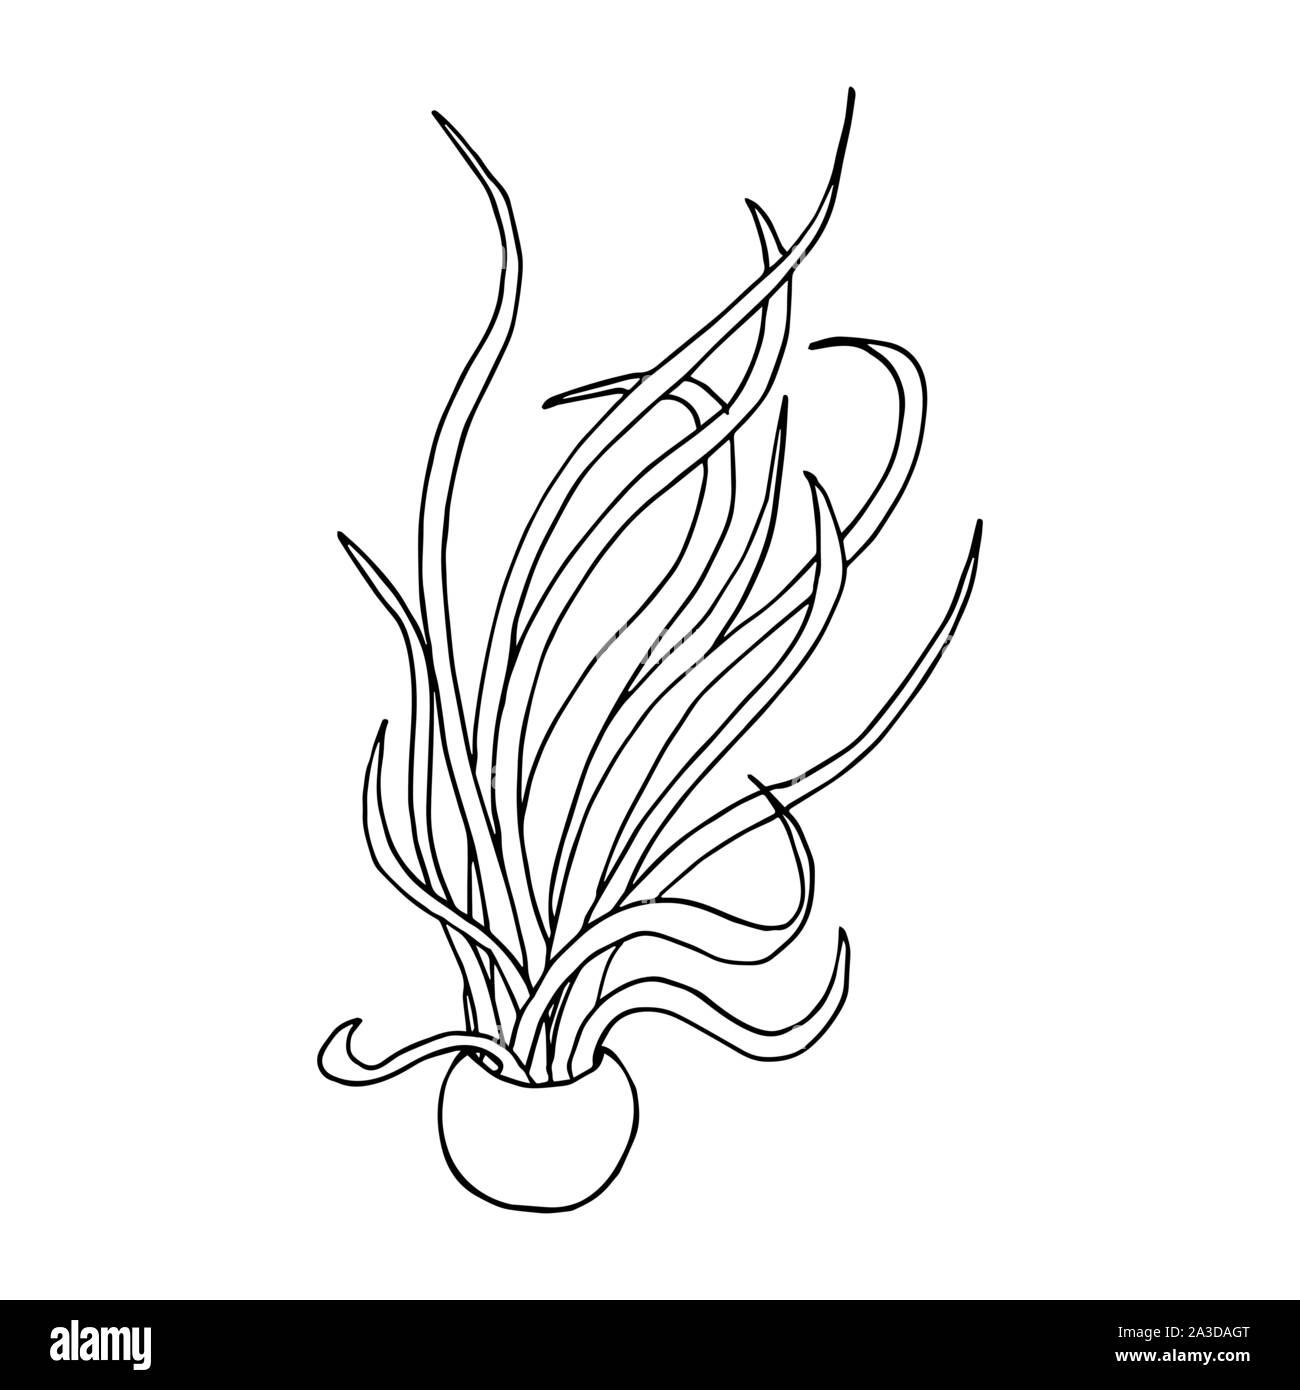 Caput Medusae pianta in un vaso. Line art doodle sketch. Contorno nero su sfondo bianco. Immagine può essere utilizzato in biglietti di auguri, poster, volantini, banner, logo, disegno botanico ecc. Illustrazione Vettoriale. EPS10 Illustrazione Vettoriale